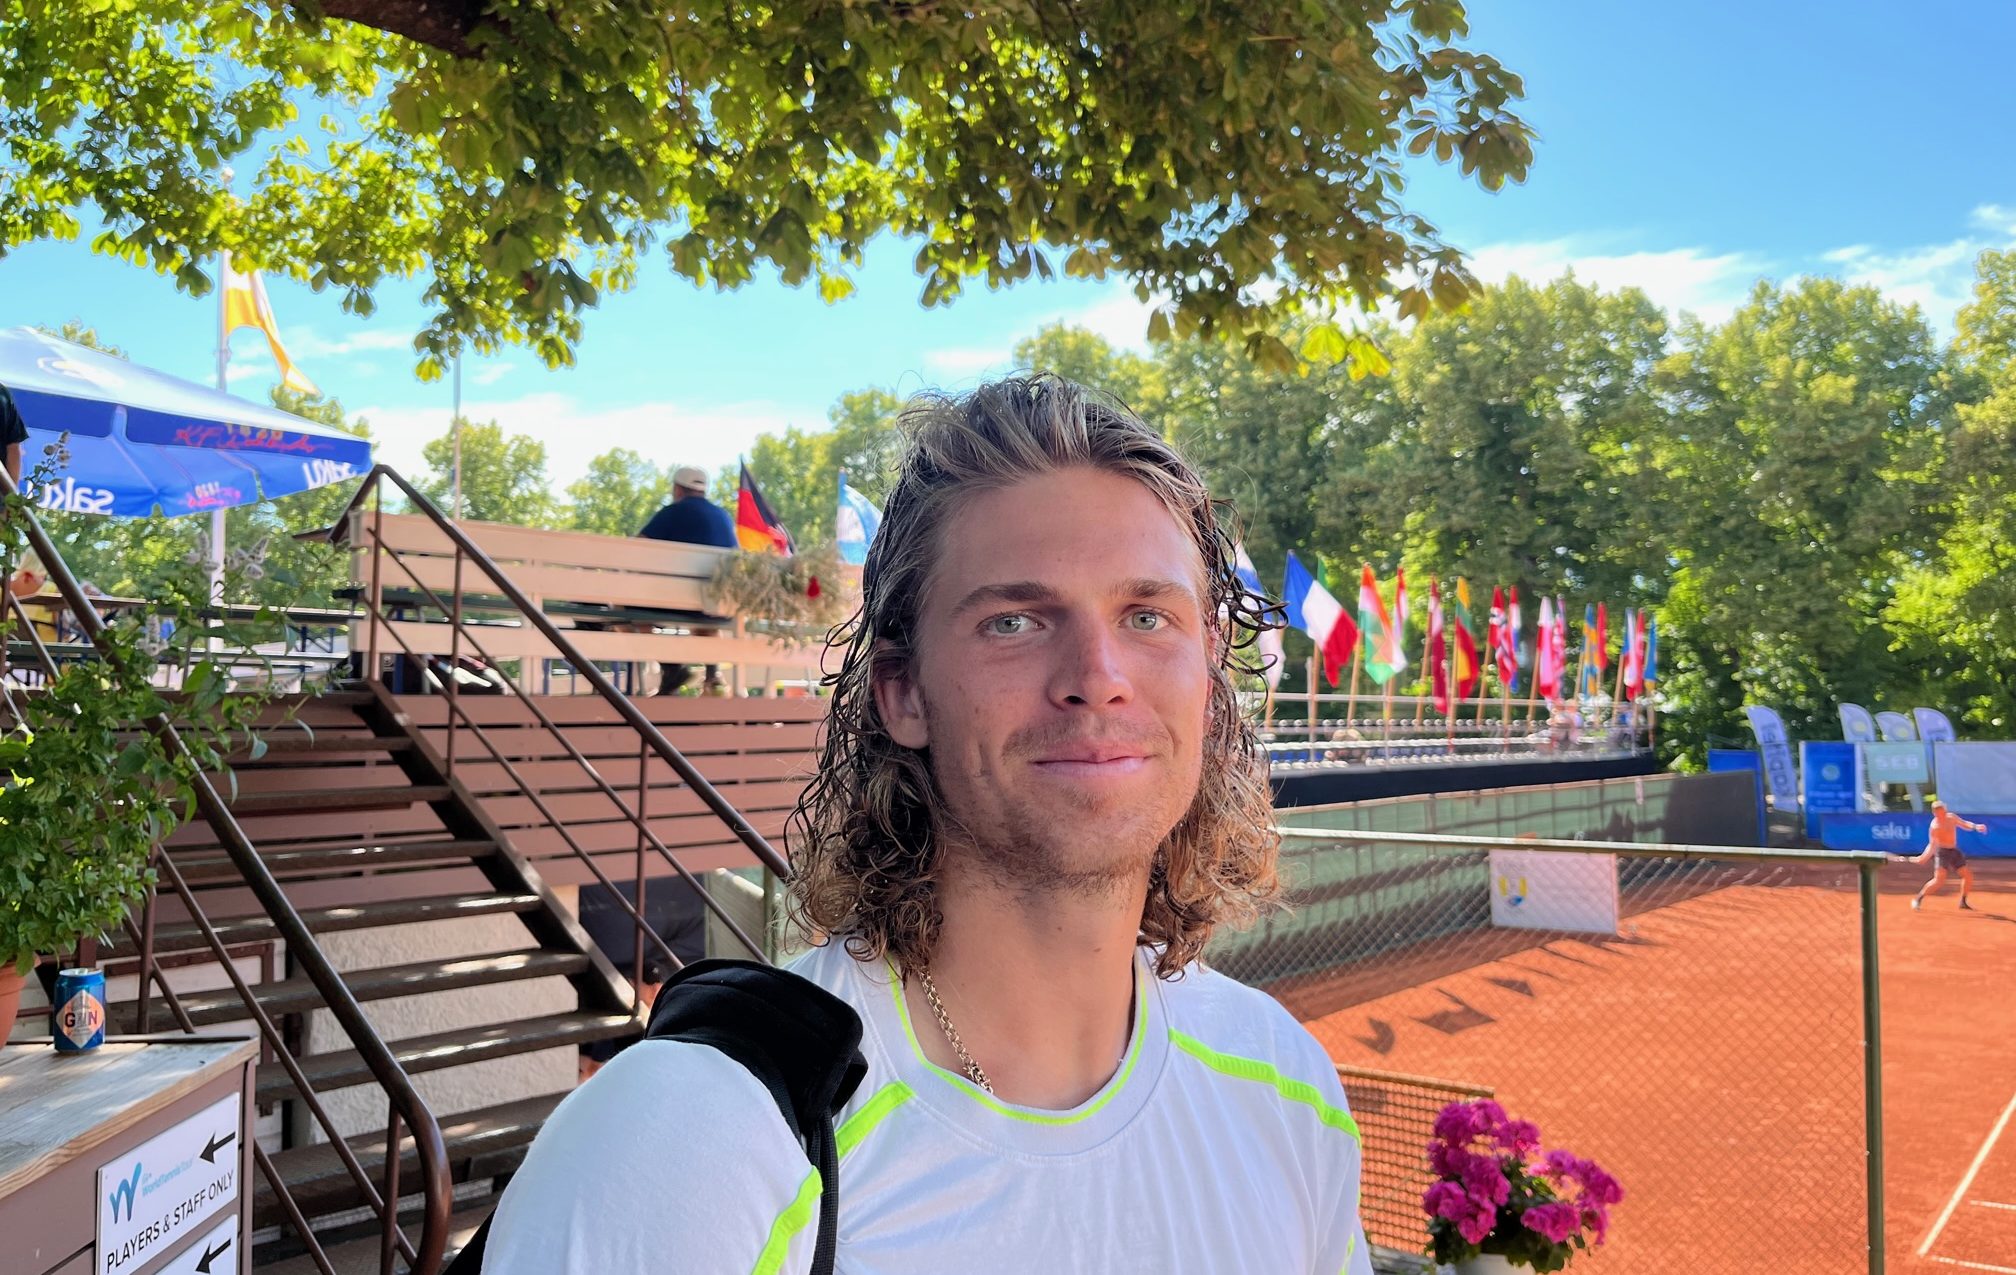 Kristjan Tamme ITF-i M15 turniiri Monastiris sai kahjuks kiire lõpu, kui eestlane jäi avaringis 4:6, 4:6 alla Corban Crowtherile (Uus-Meremaa, ATP 947.). Tegemi